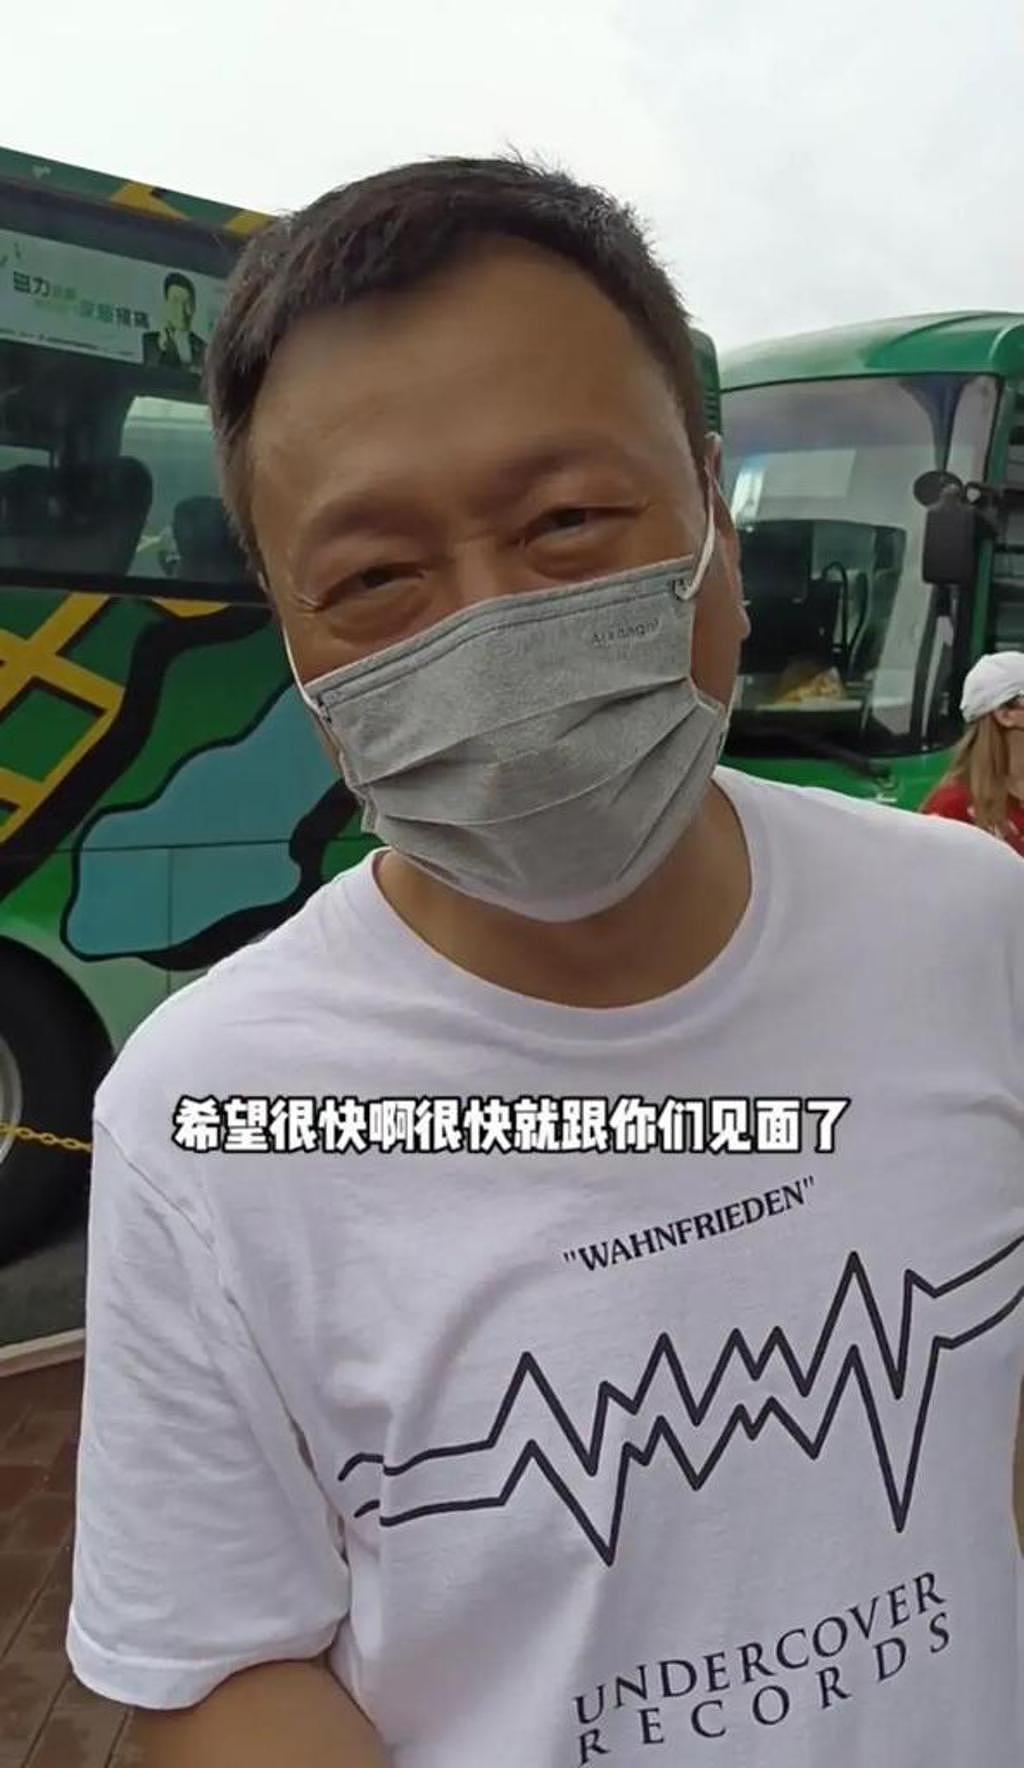 黎耀祥拍 TVB 剧 5 个月快累垮，杀青后急回内地，推 4 箱行李显疲惫 - 4